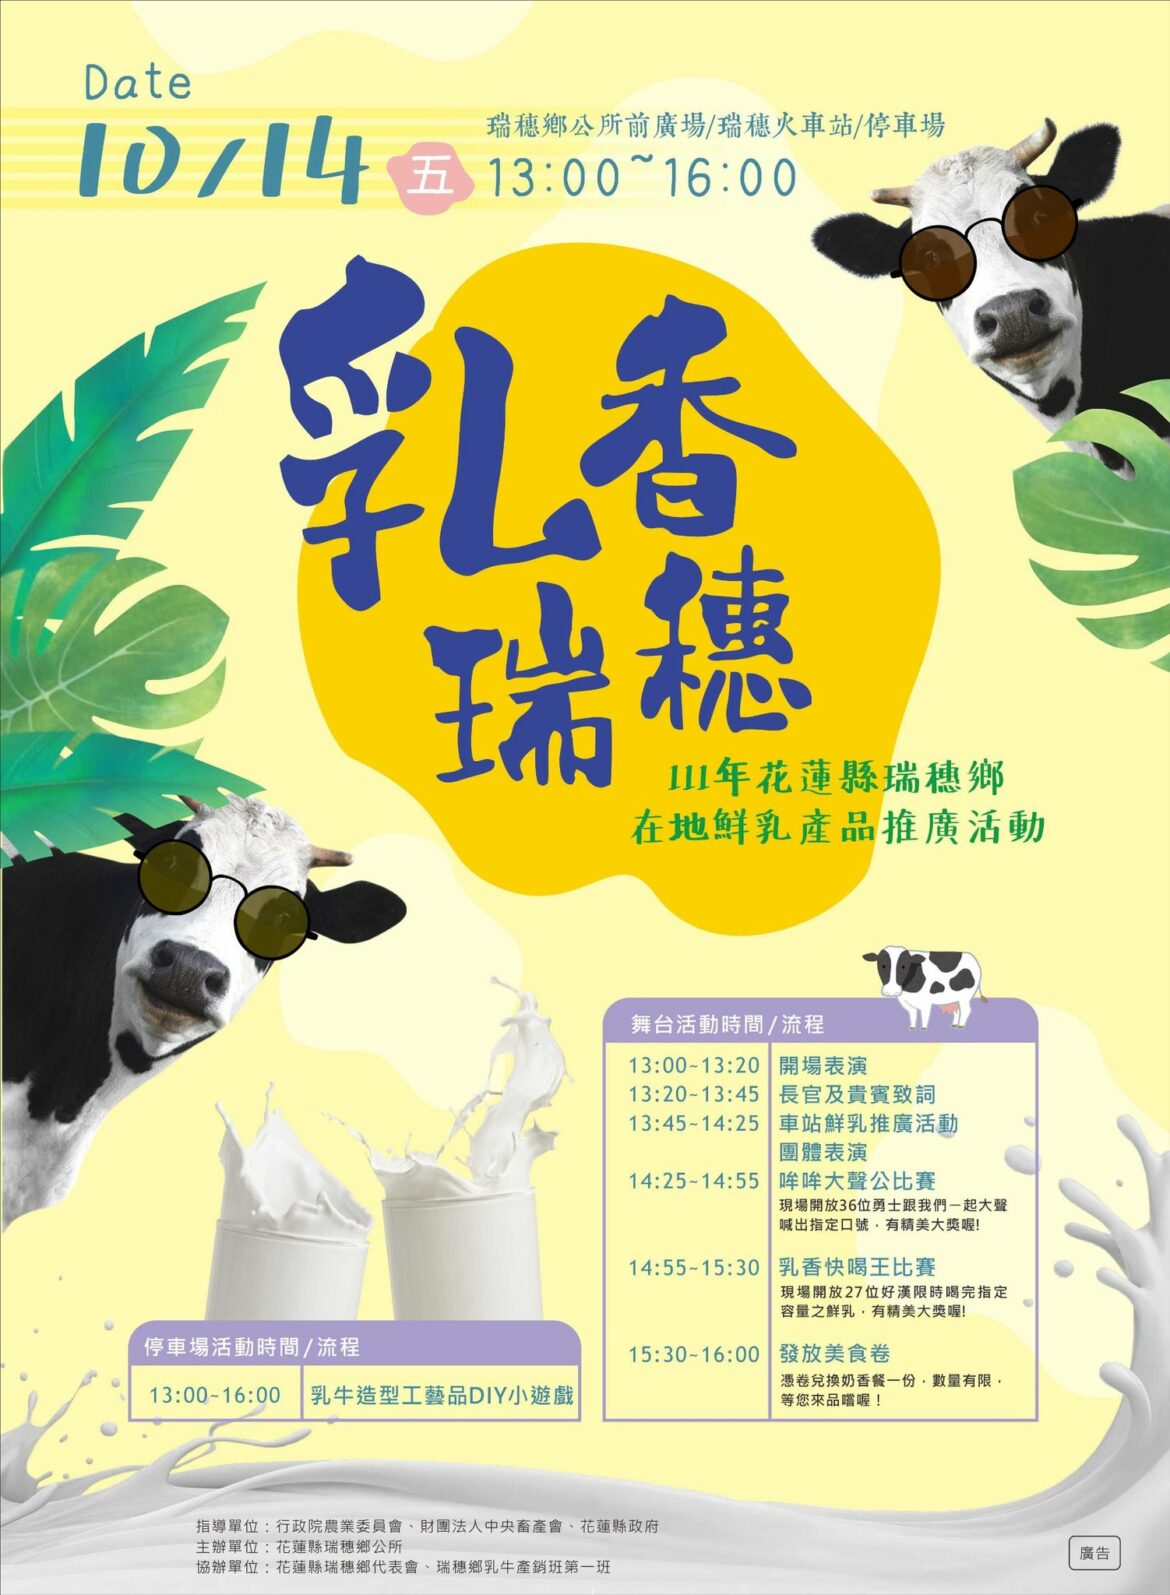 瑞穗鄉將於10月14日舉辦「乳香瑞穗」在地鮮乳產品推廣活動